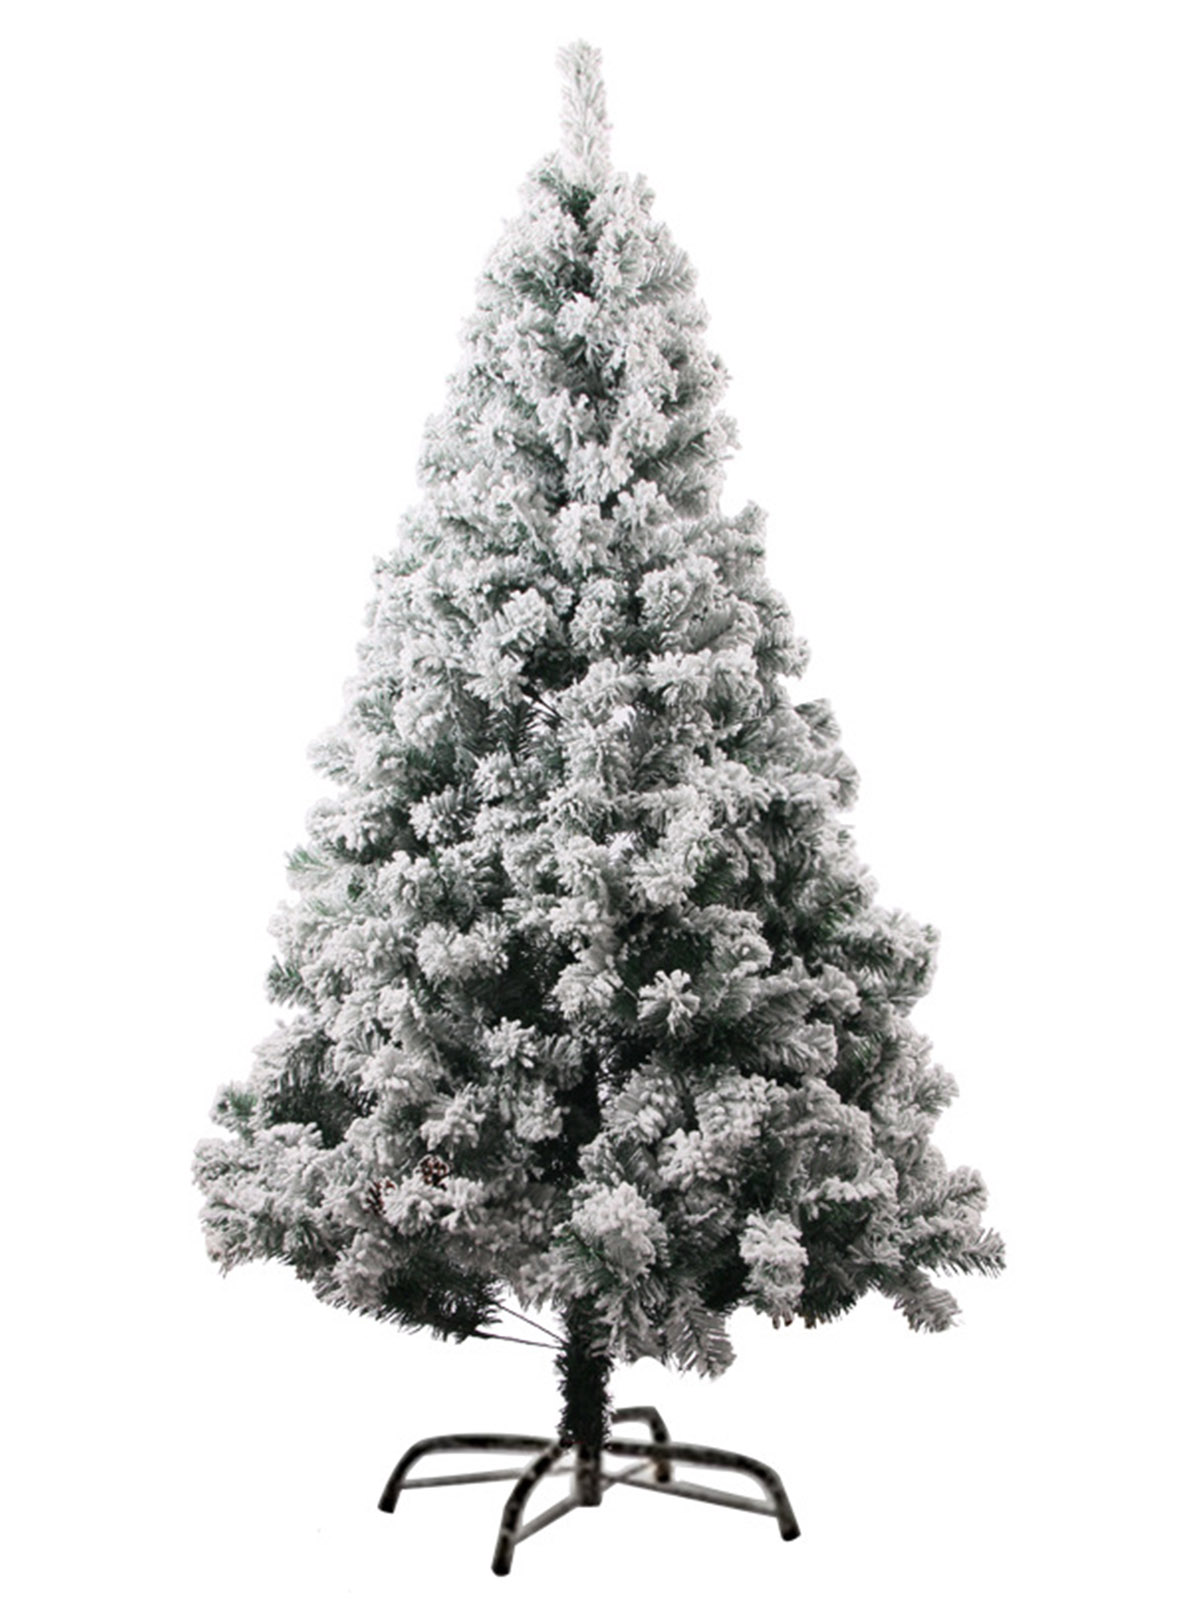 雪の積もったクリスマスツリーです 入荷予定 ☆彡 180cm VeroMan SALE 56%OFF クリスマスツリー スノーホワイト オーナメント セット 雪化粧